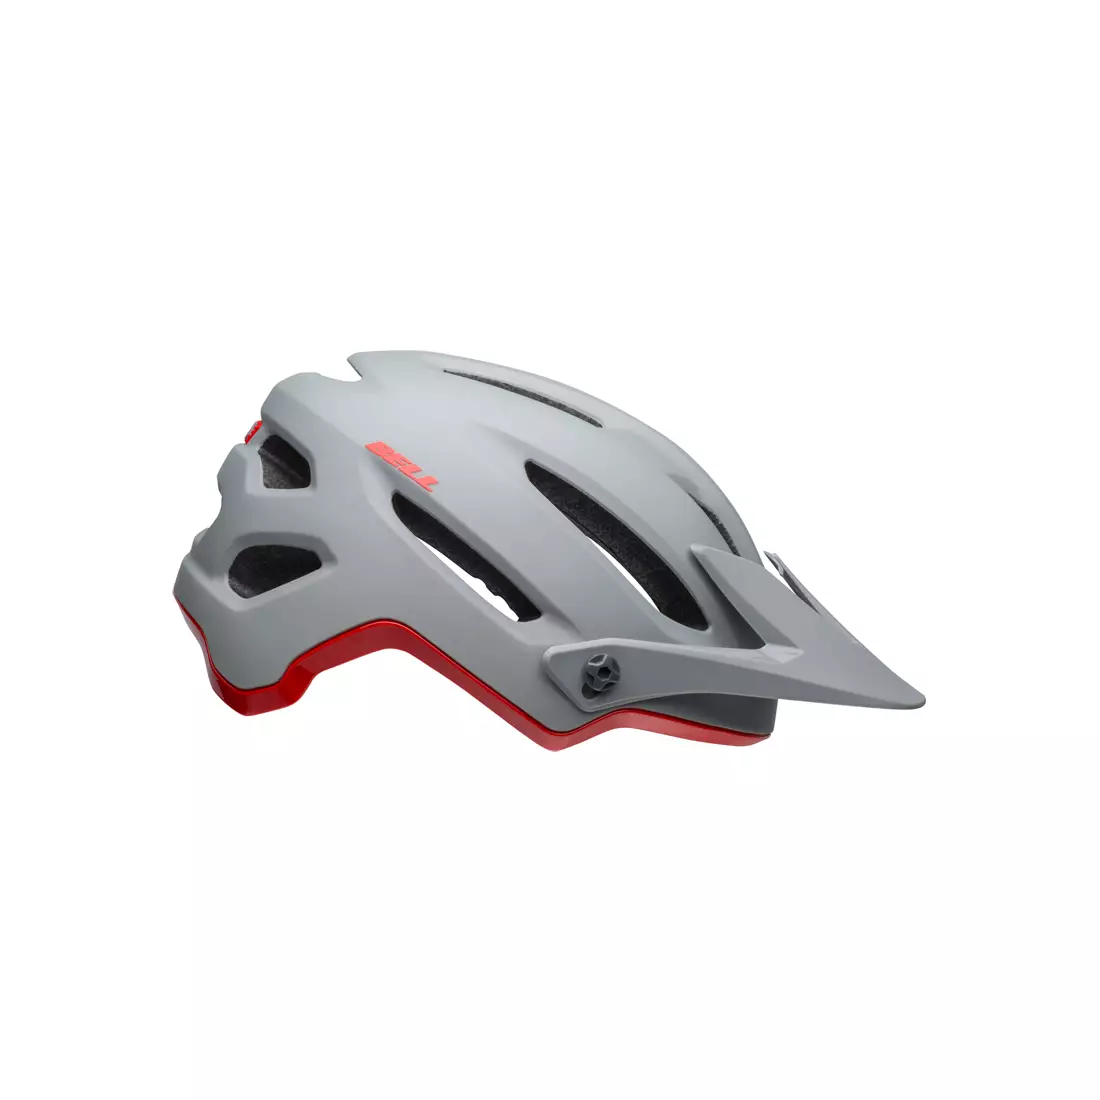 Cyklistická helma mtb BELL 4FORTY cliffhanger matte gloss gray crimson 